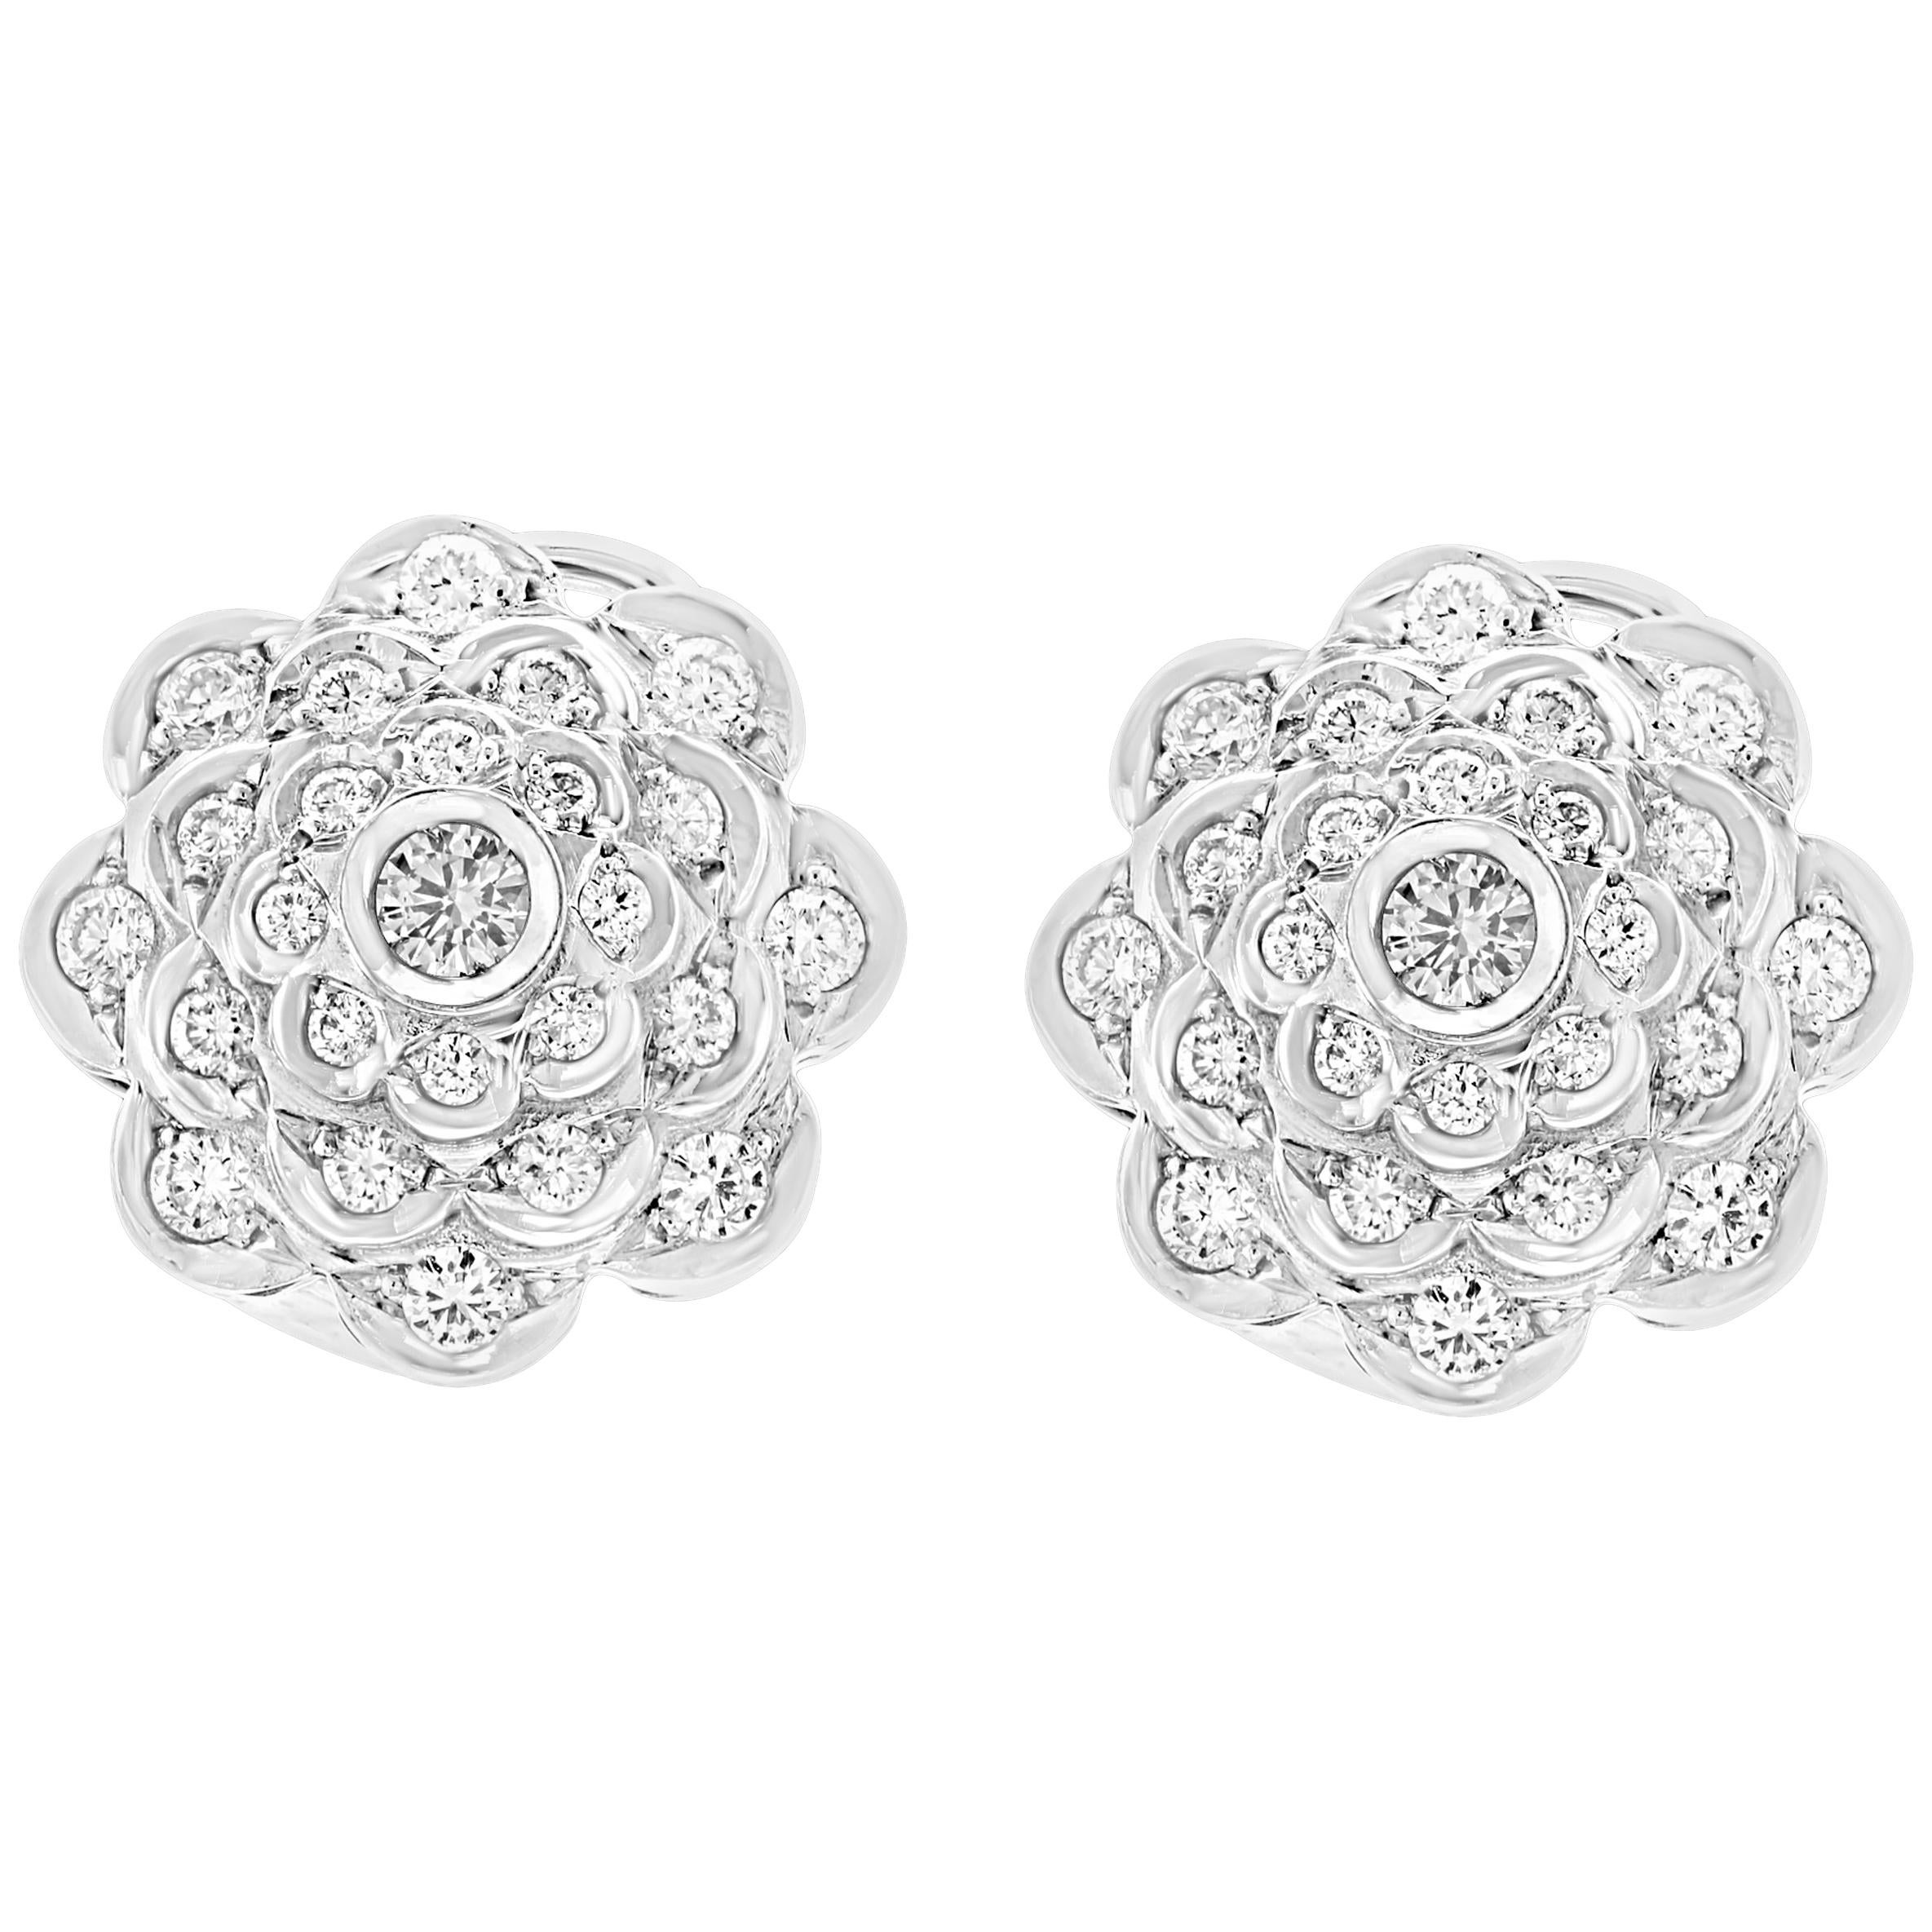 2.8 Carat Diamond VS Quality Flower/Cluster Earring 18 Karat White Gold For Sale